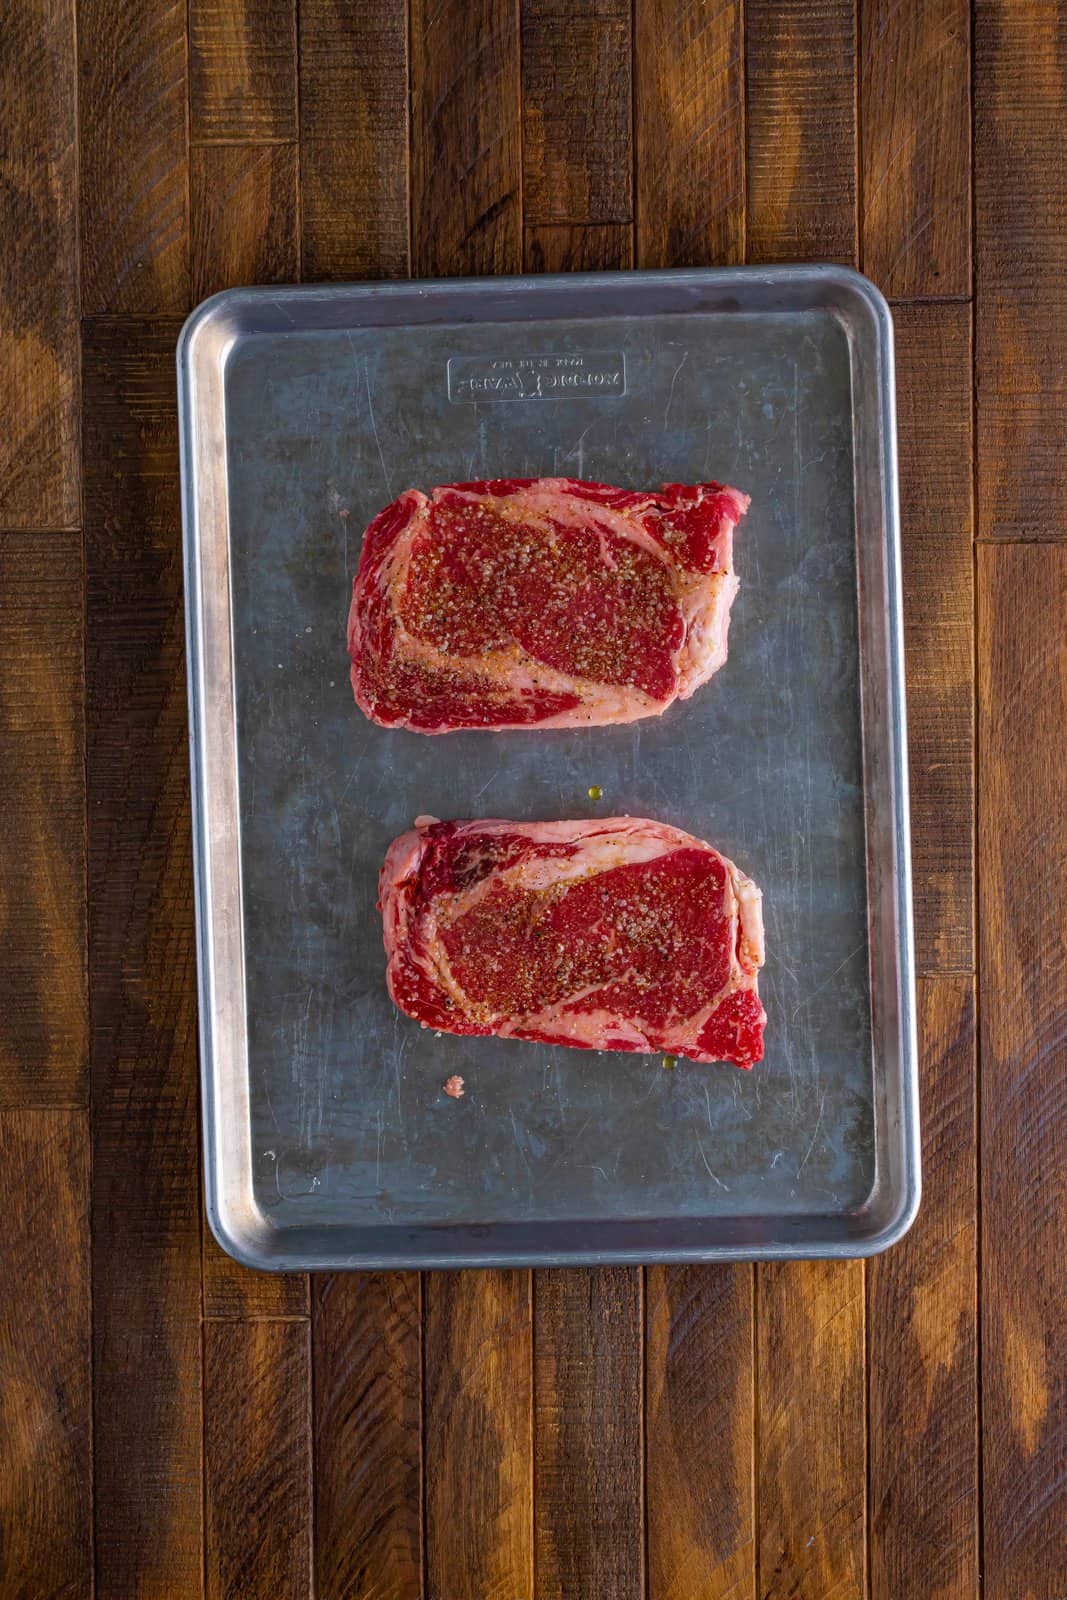 Two Ribeye steaks on a sheet pan.